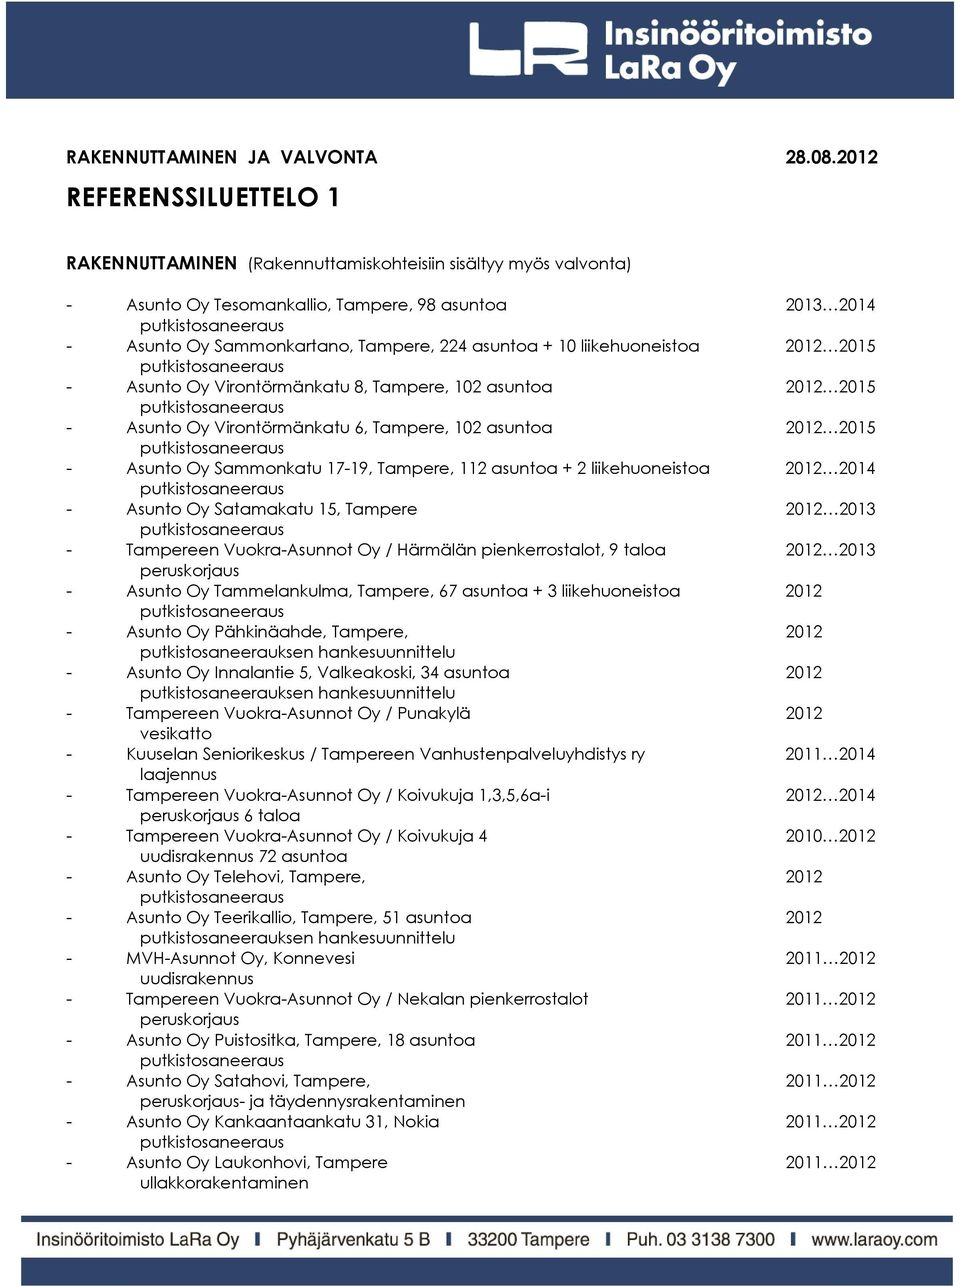 10 liikehuoneistoa 2012 2015 - Asunto Oy Virontörmänkatu 8, Tampere, 102 asuntoa 2012 2015 - Asunto Oy Virontörmänkatu 6, Tampere, 102 asuntoa 2012 2015 - Asunto Oy Sammonkatu 17-19, Tampere, 112